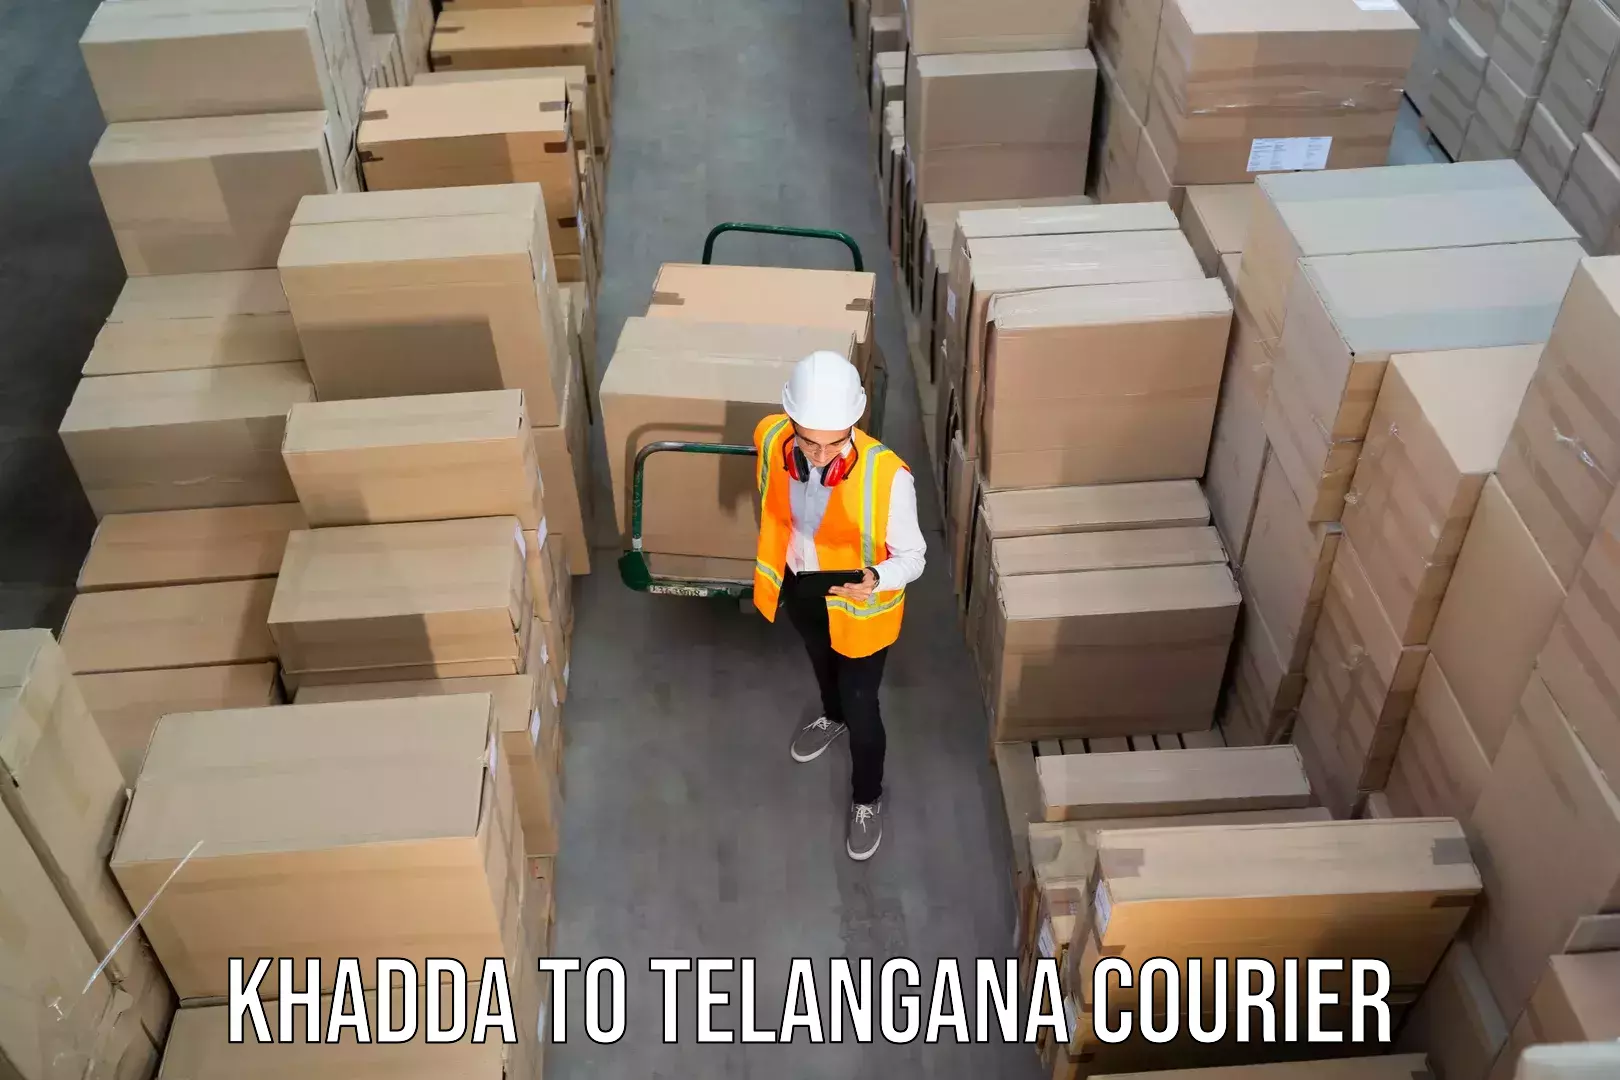 Small parcel delivery Khadda to Gangadhara